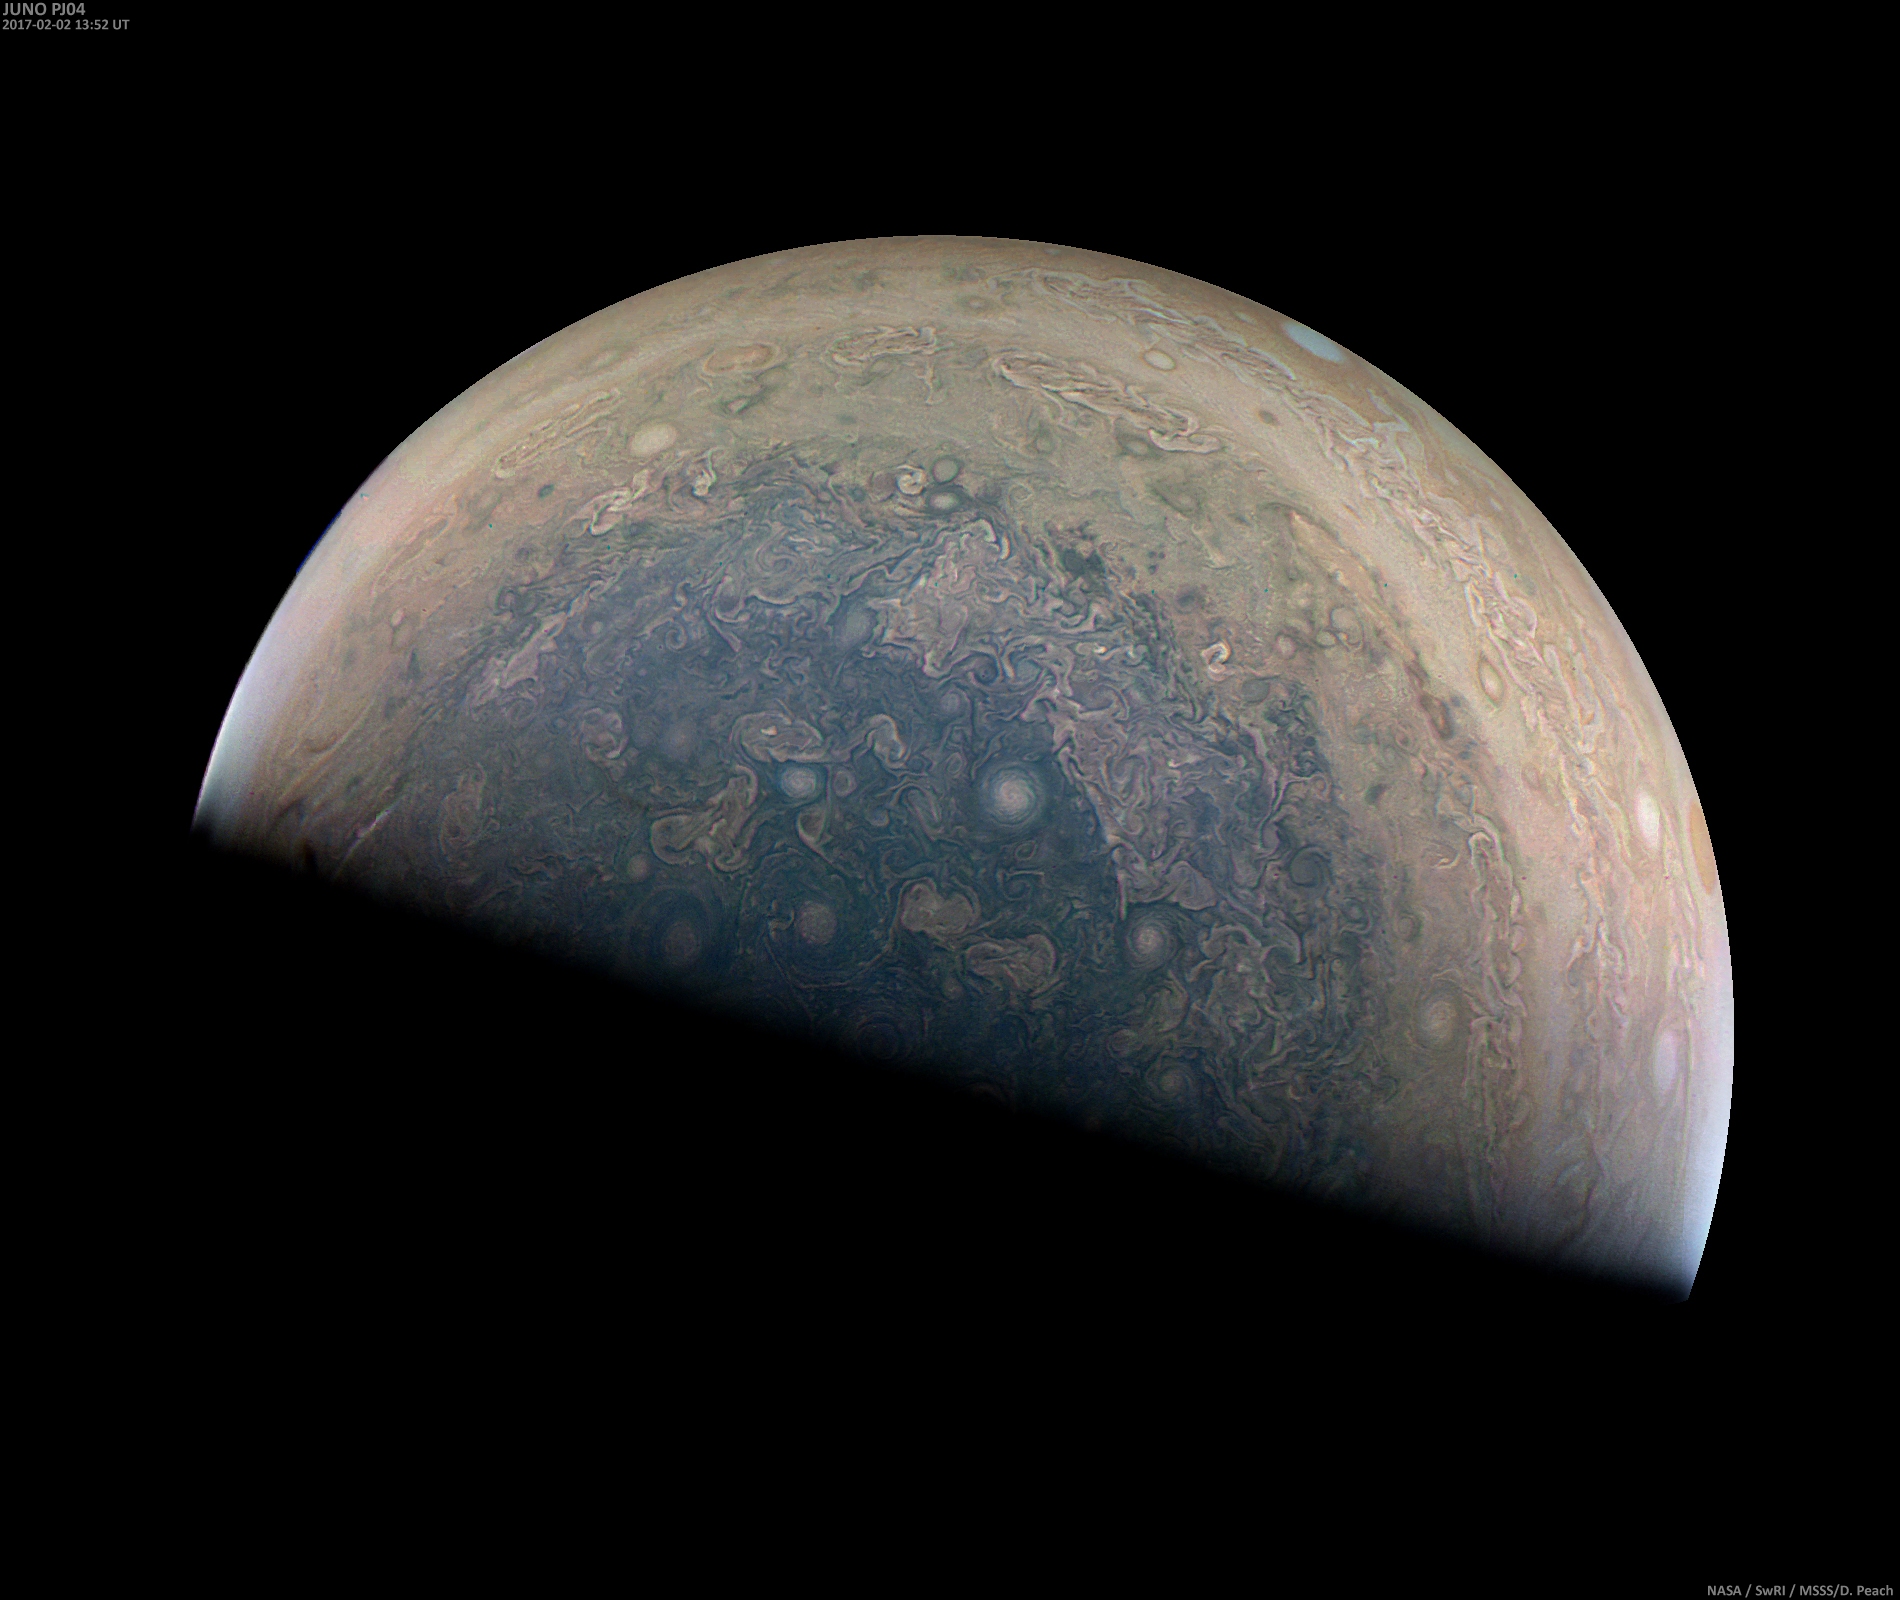 Jupiter by Juno, Feb. 2, 2017